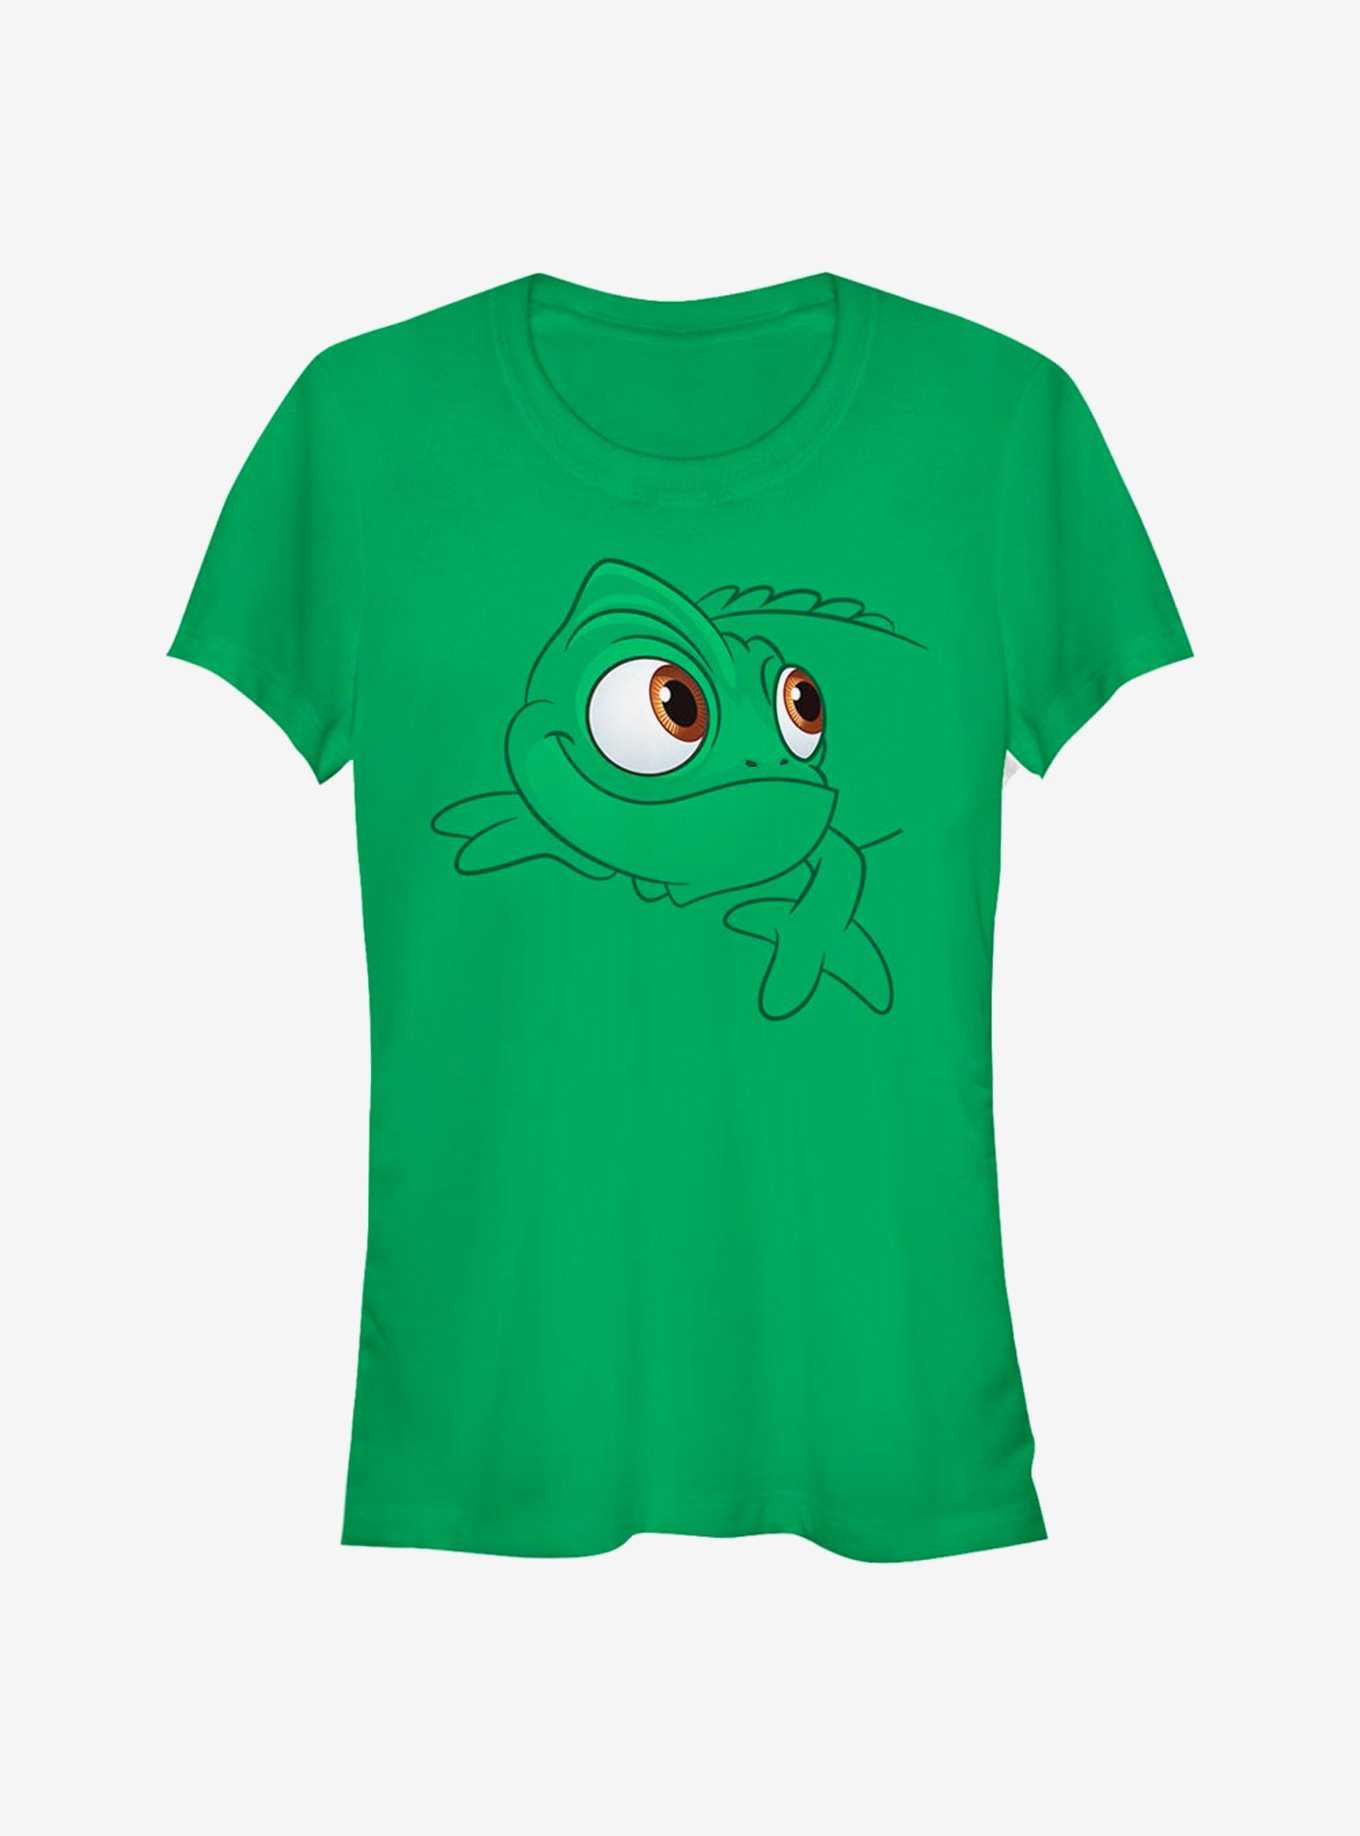 Disney Tangled Pascal Face Girls T-Shirt, , hi-res